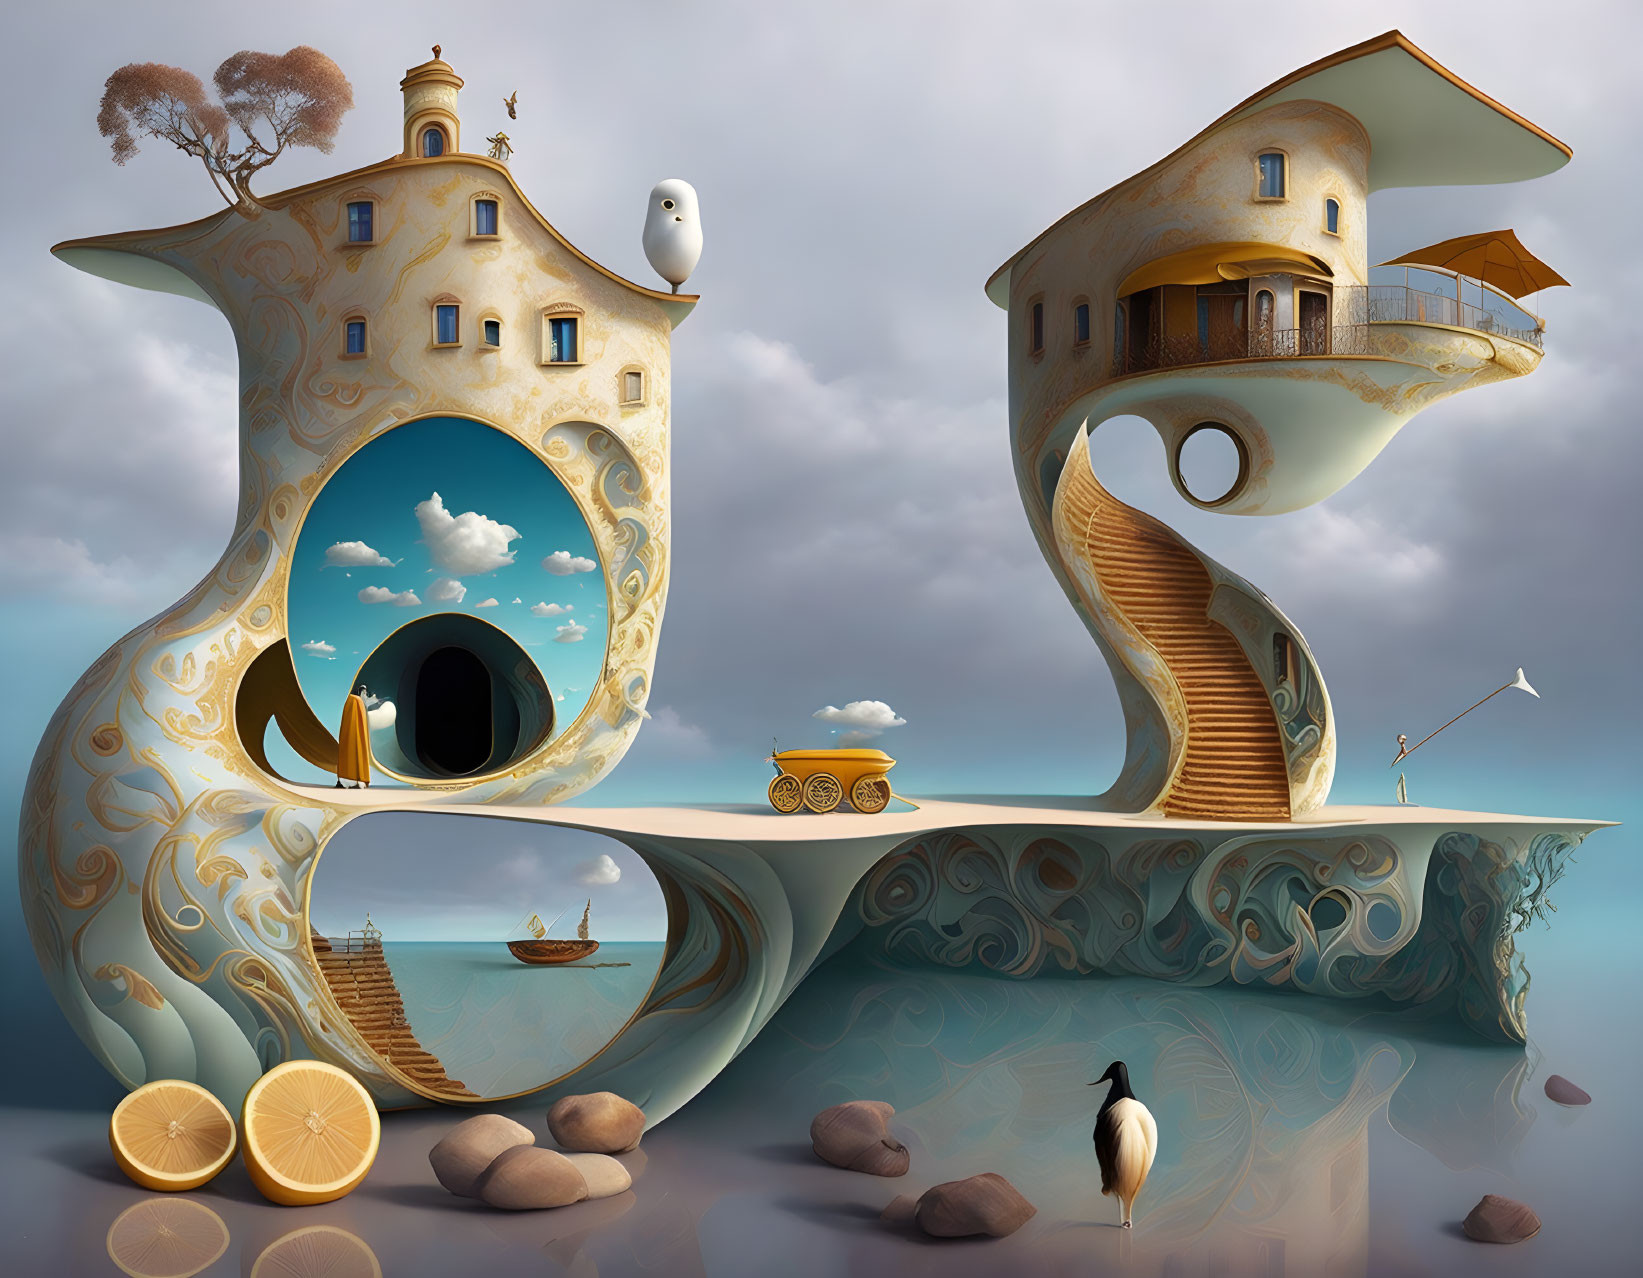 Whimsical surreal artwork: shoes, floating islands, lemons, rocks, bird, clouds,